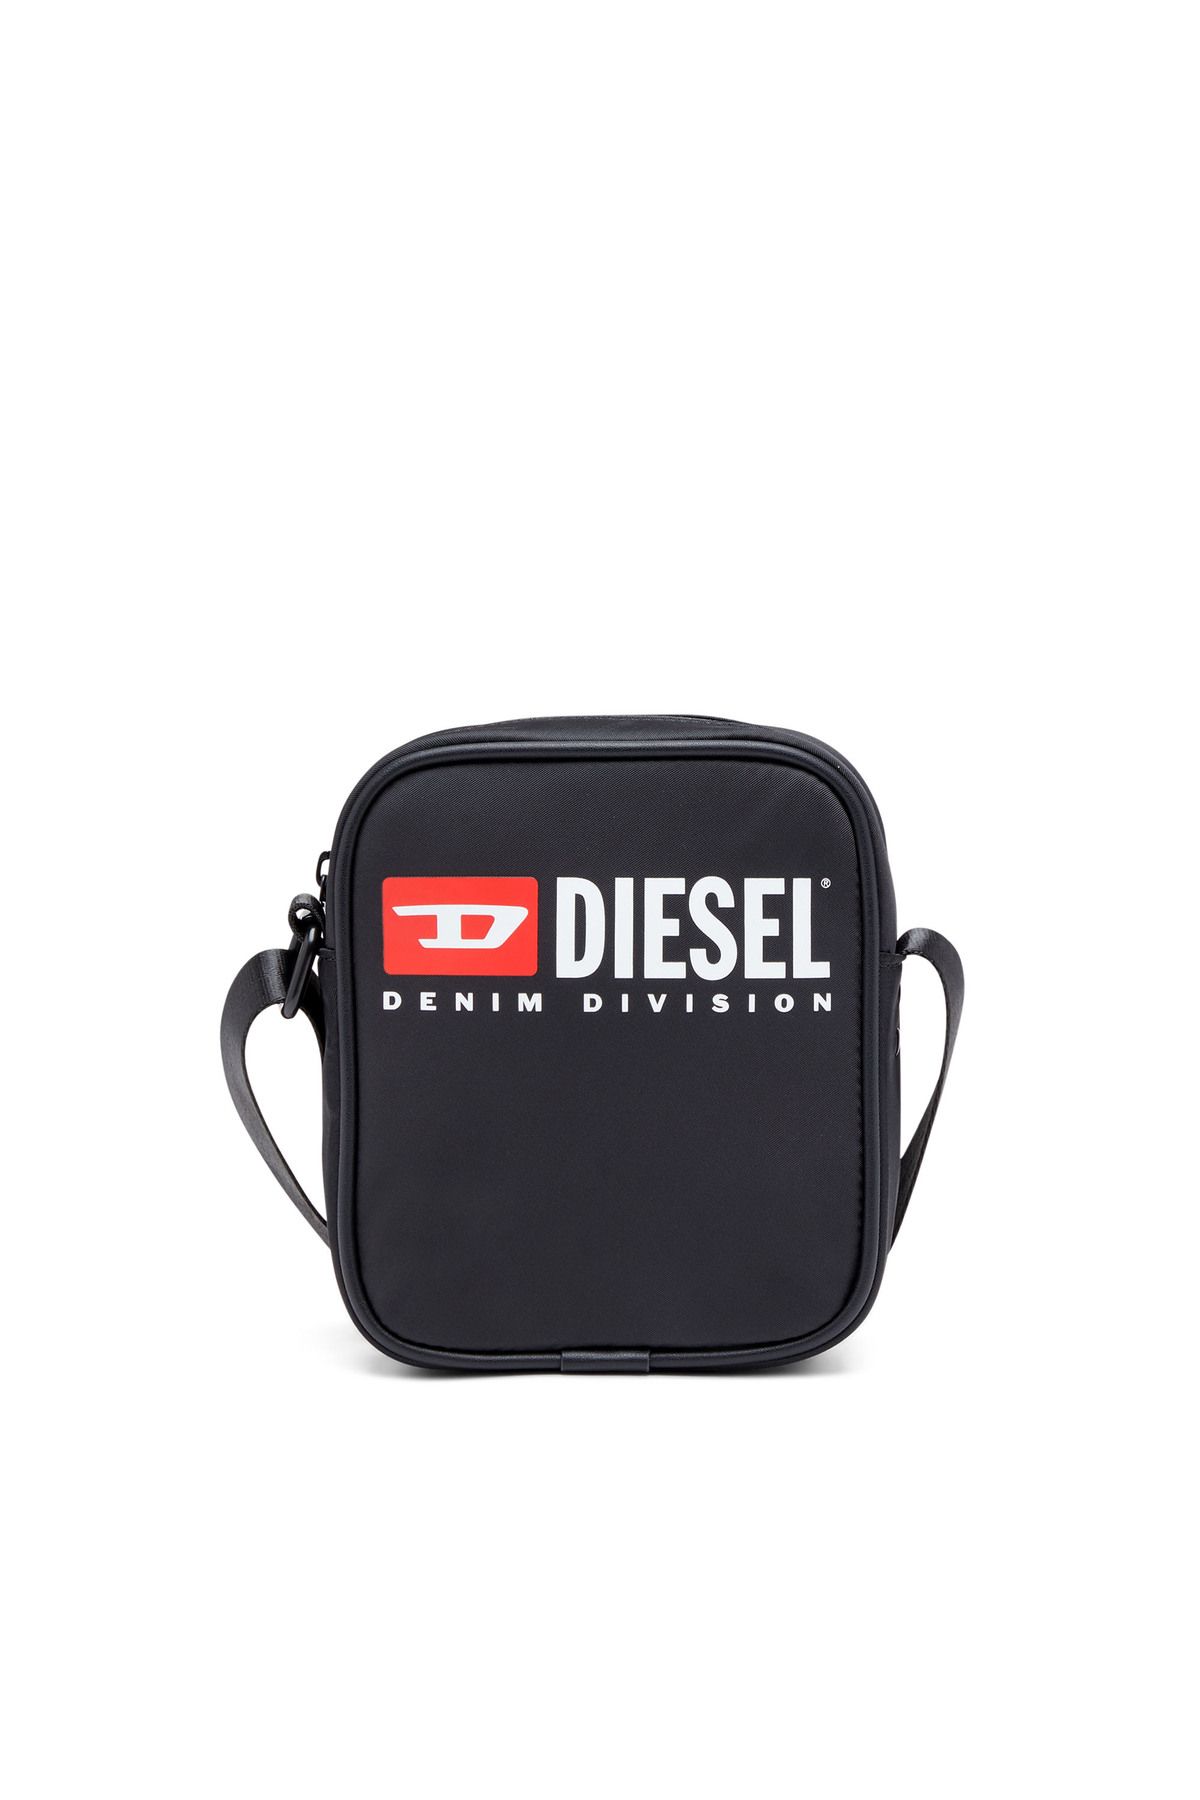 Diesel Rınke Crossbody Cross Bodybag-s34